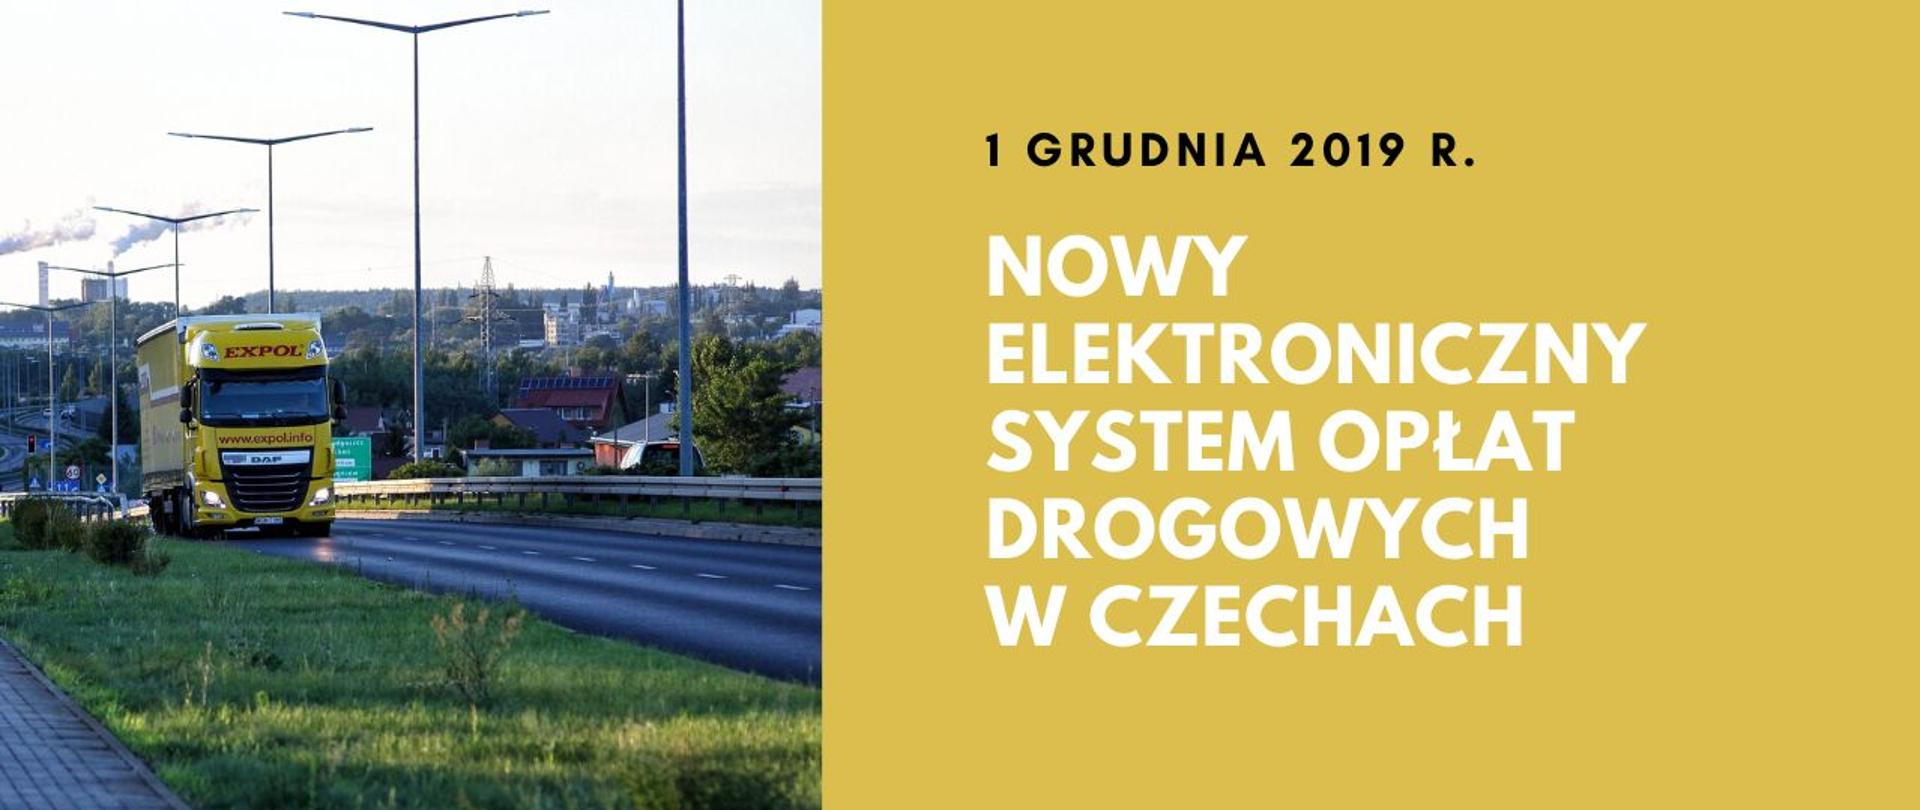 Po lewej stronie tir na drodze plus napis: Nowy elektroniczny system opłat drogowych w Czechach